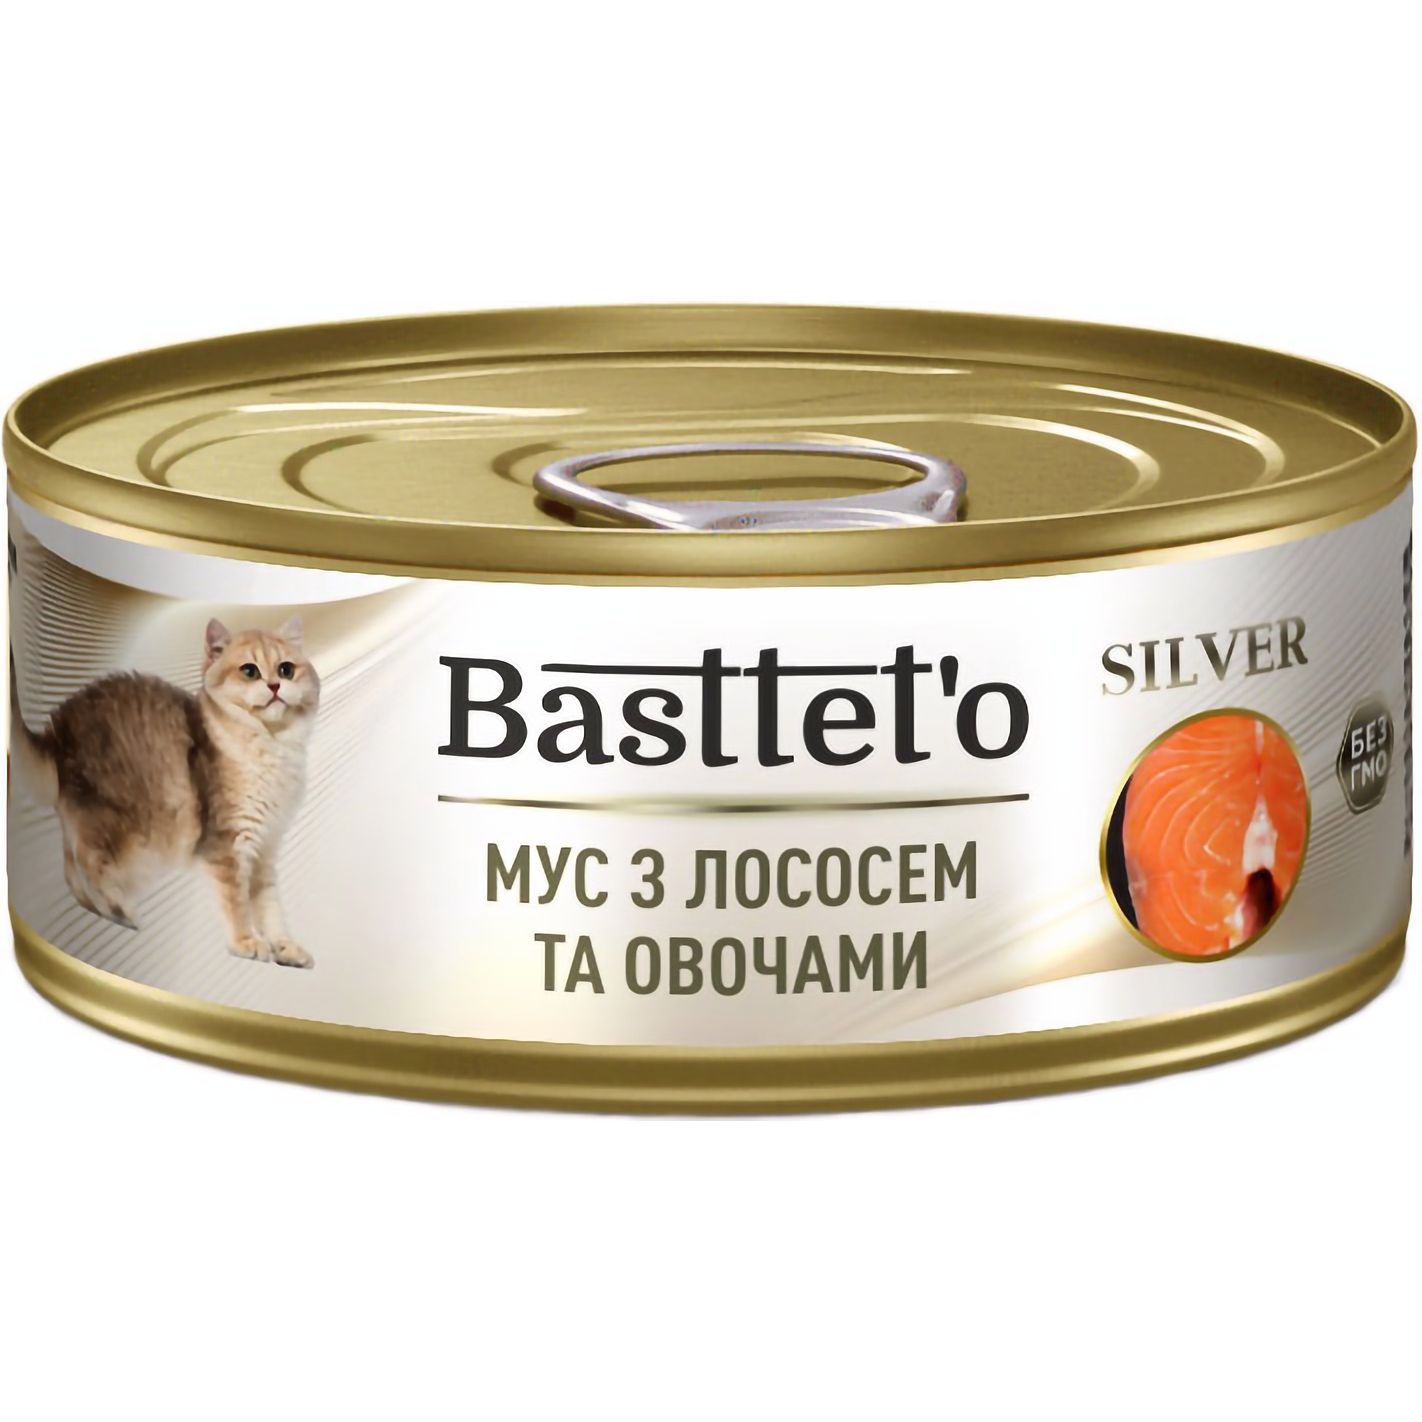 Влажный корм для котов Basttet'o Silver мусс из лососем и овощами 85 г - фото 1